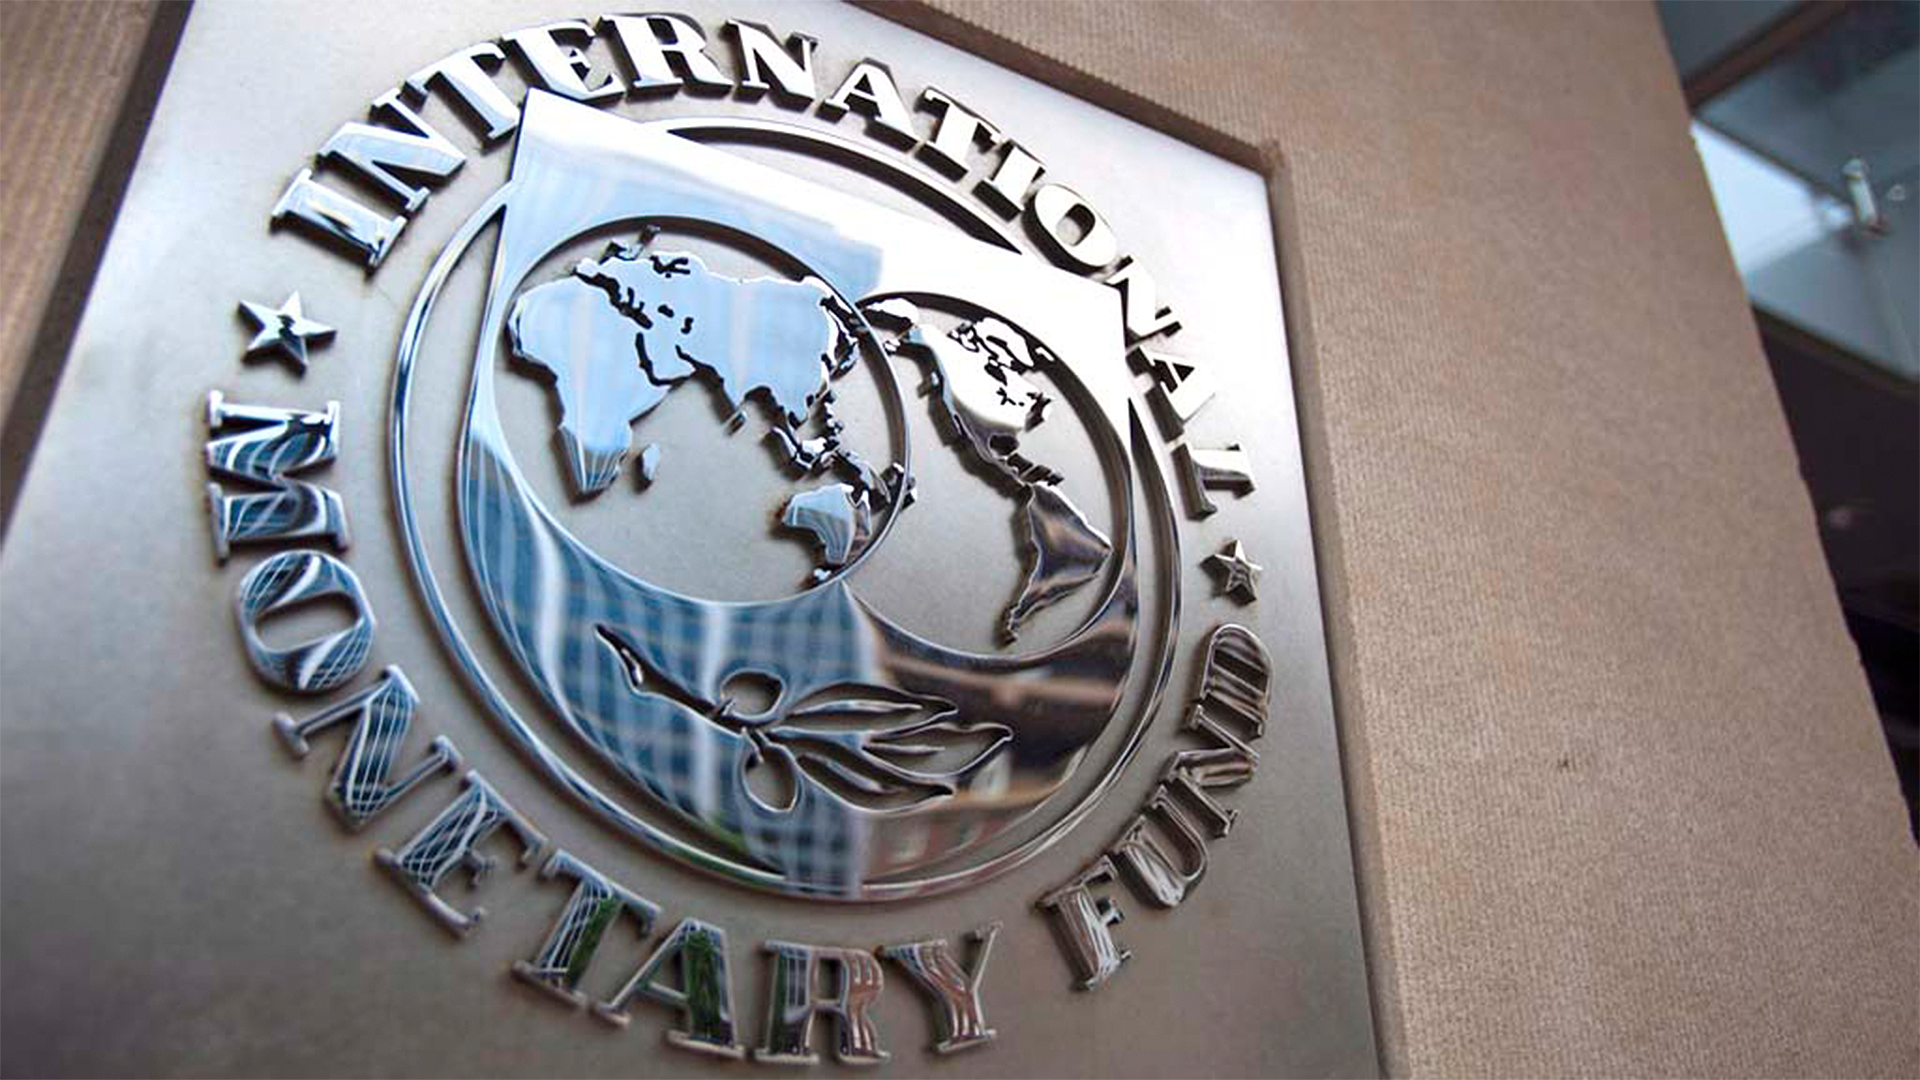 Logo des Internationalen Währungsfonds